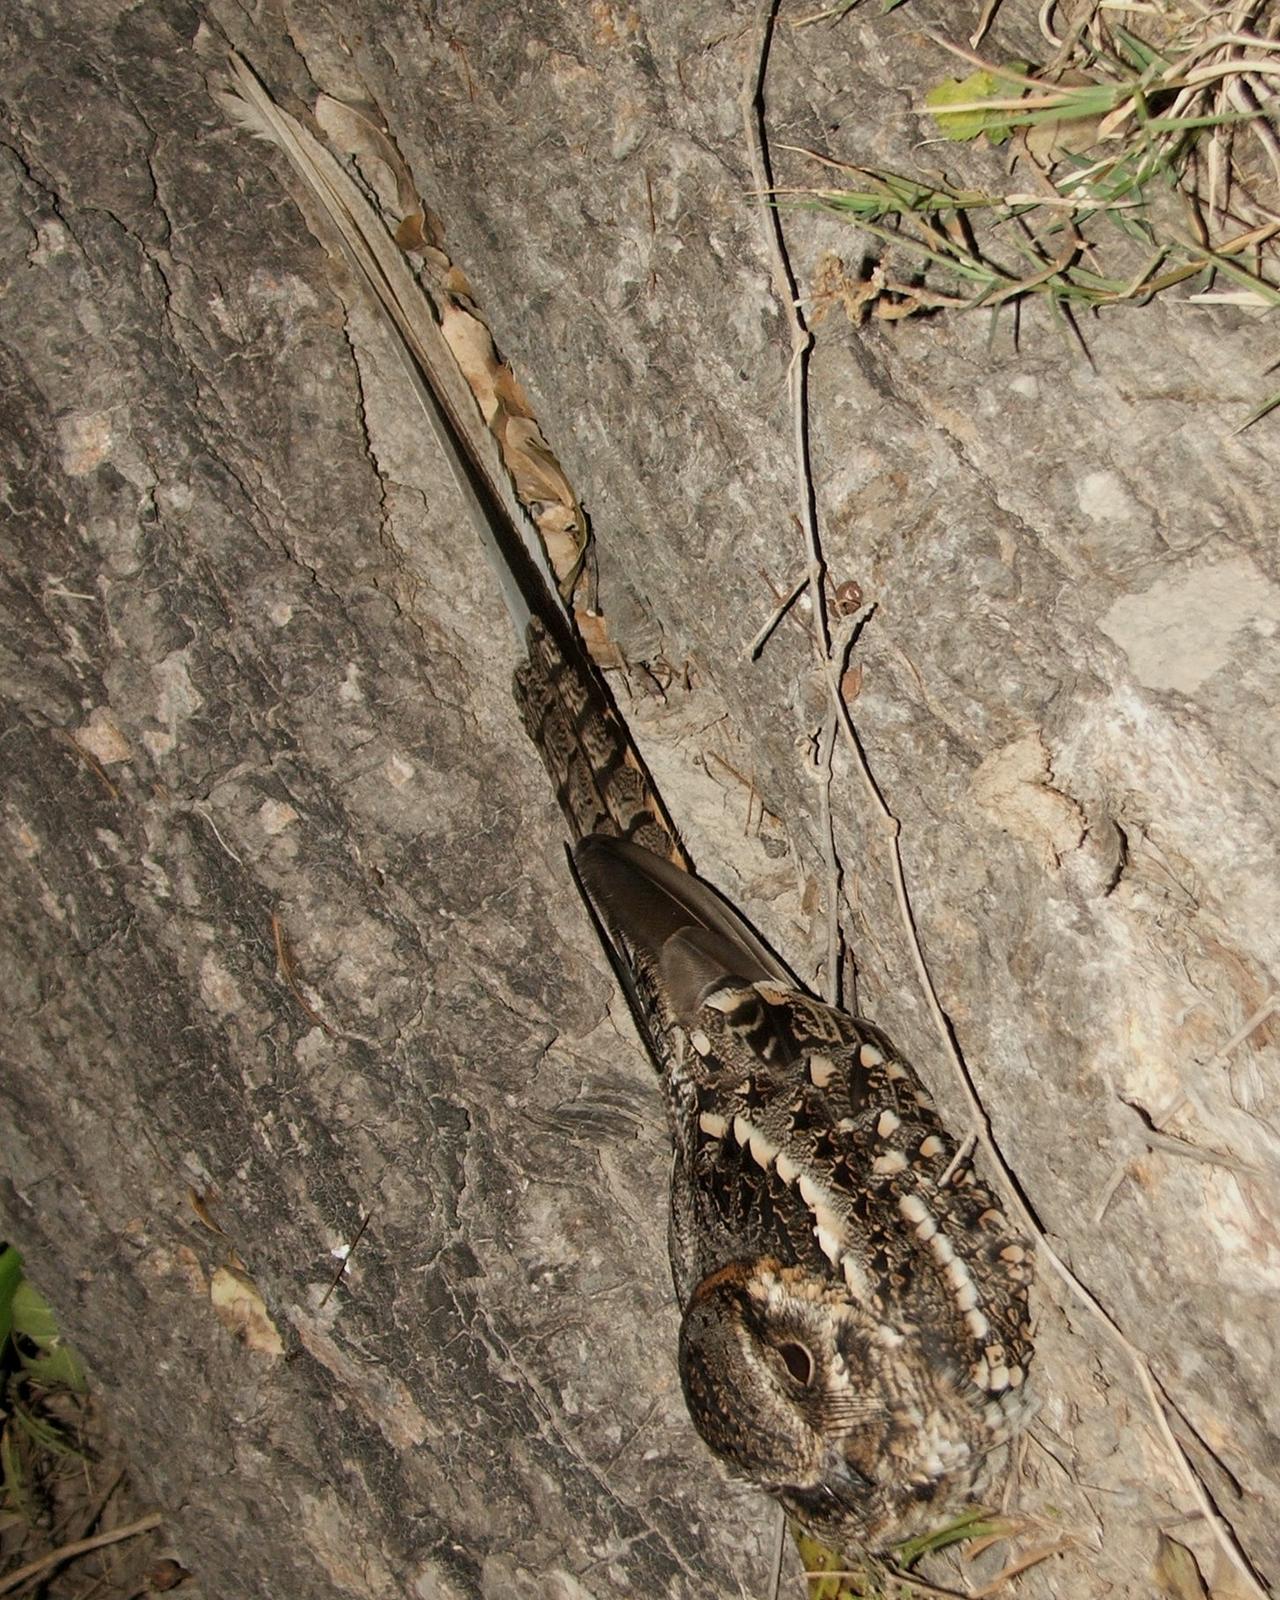 Scissor-tailed Nightjar Photo by Marcelo Padua